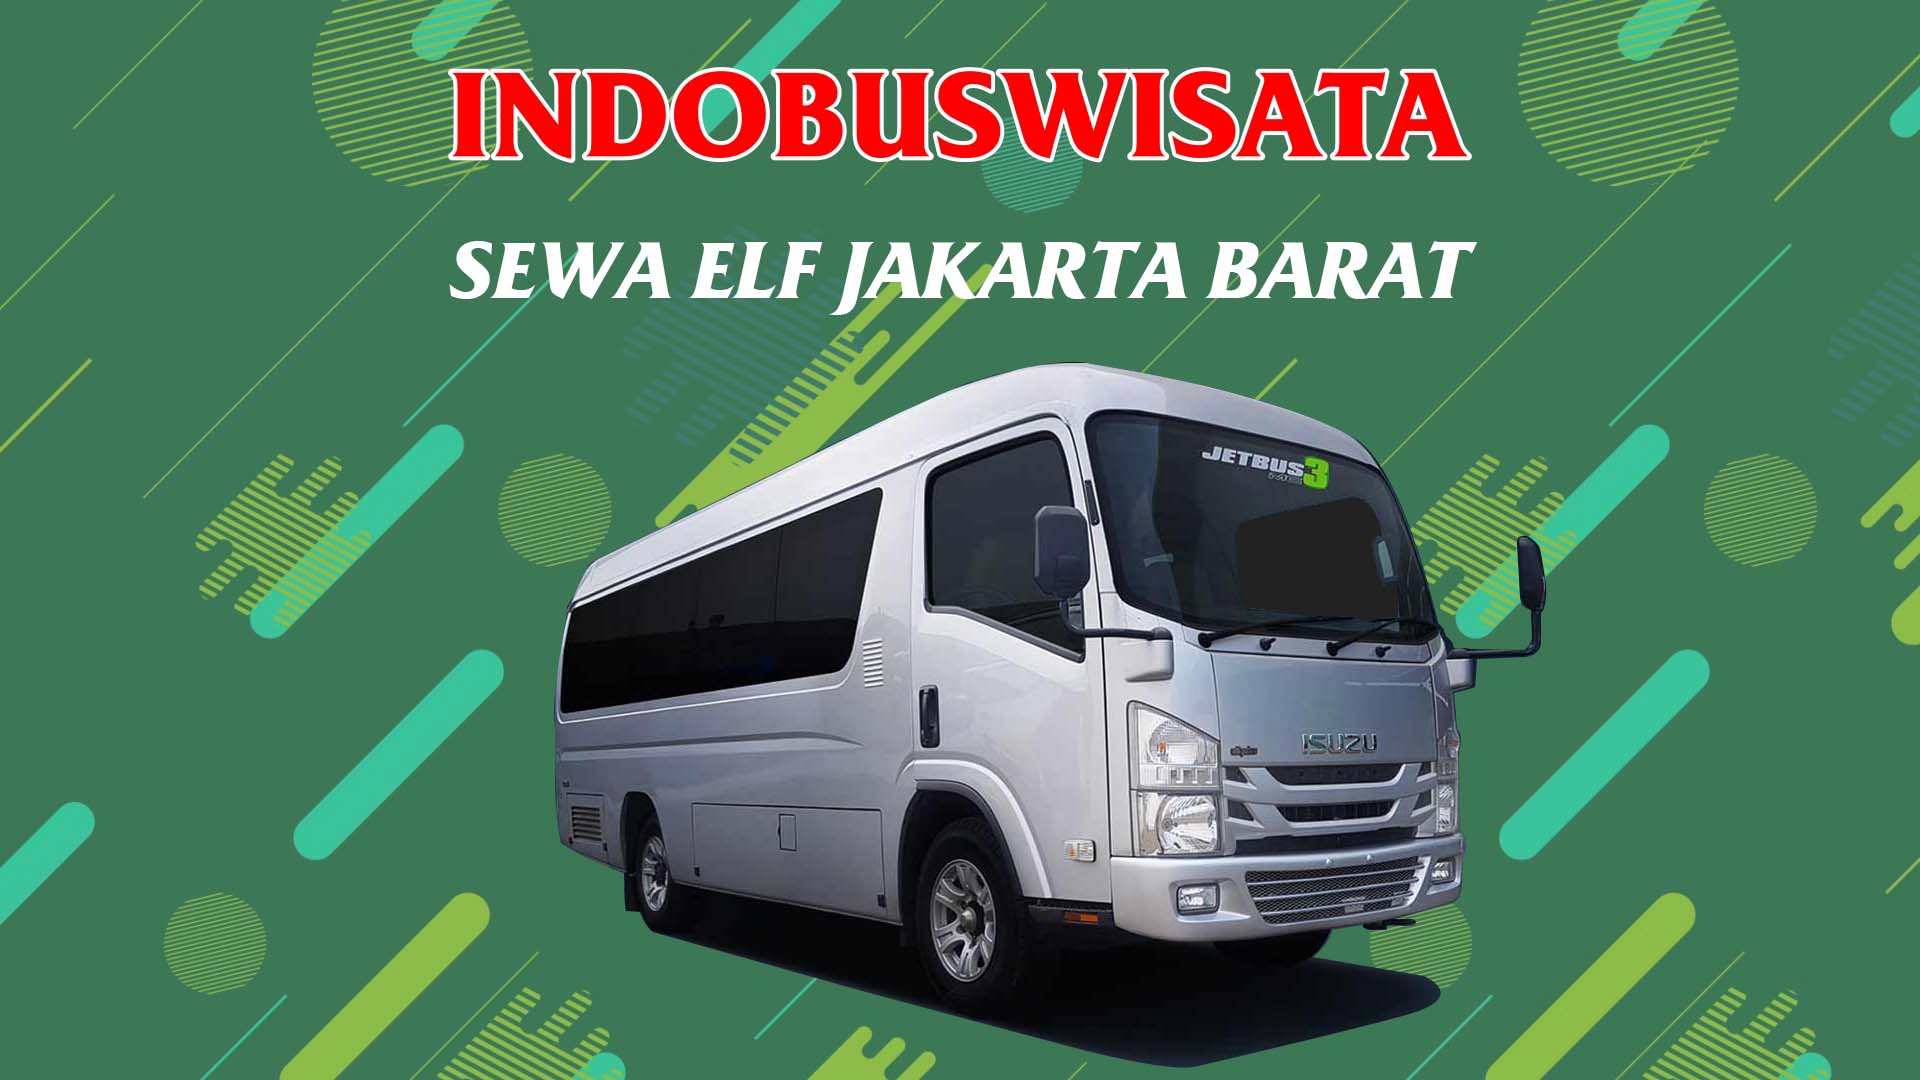 028 Sewa Elf Jakarta Barat Indobuswisata